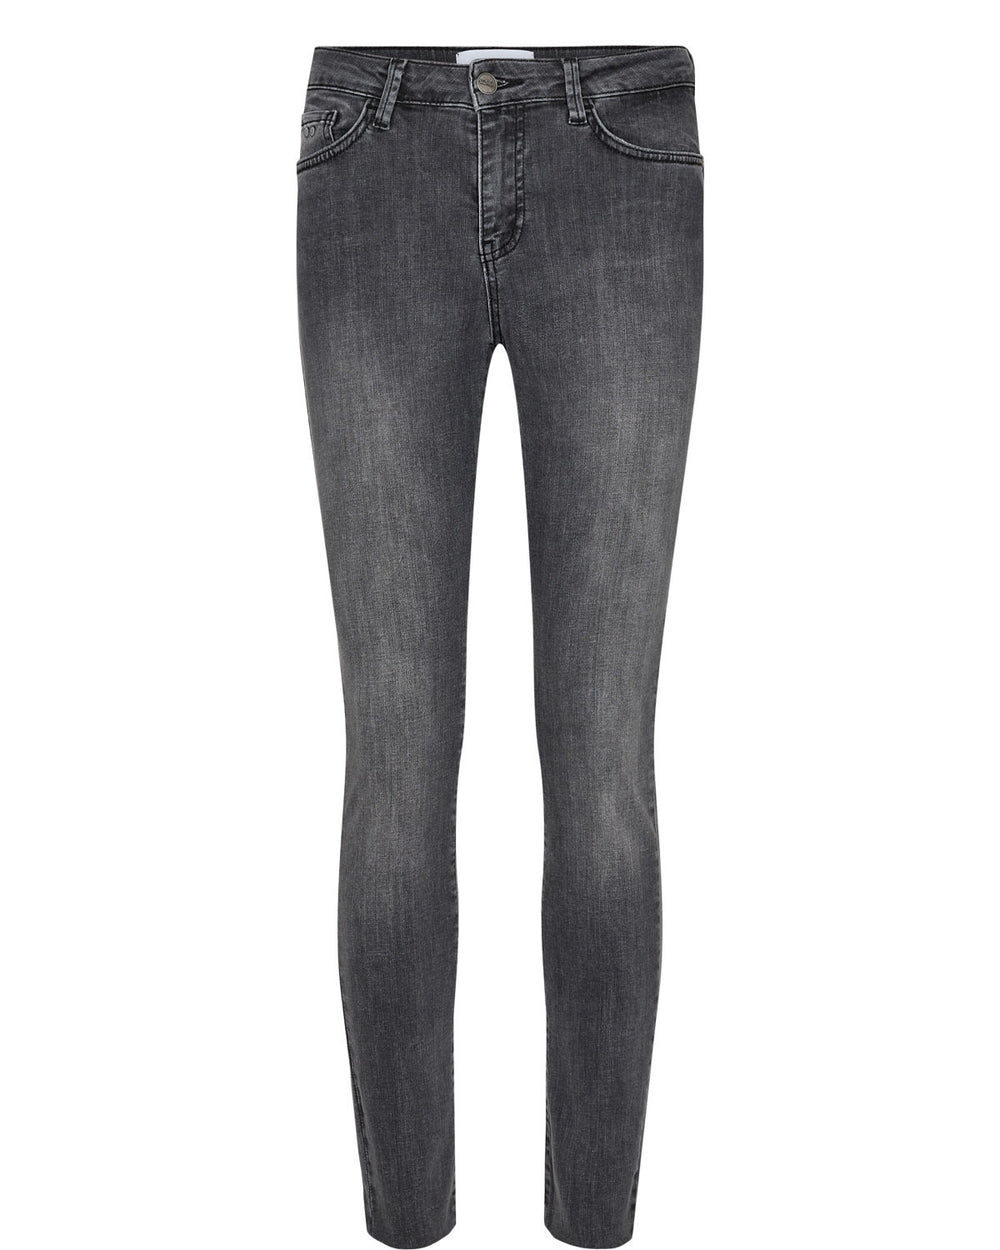 NUSIDNEY Dark Grey Denim Cropped Jeans